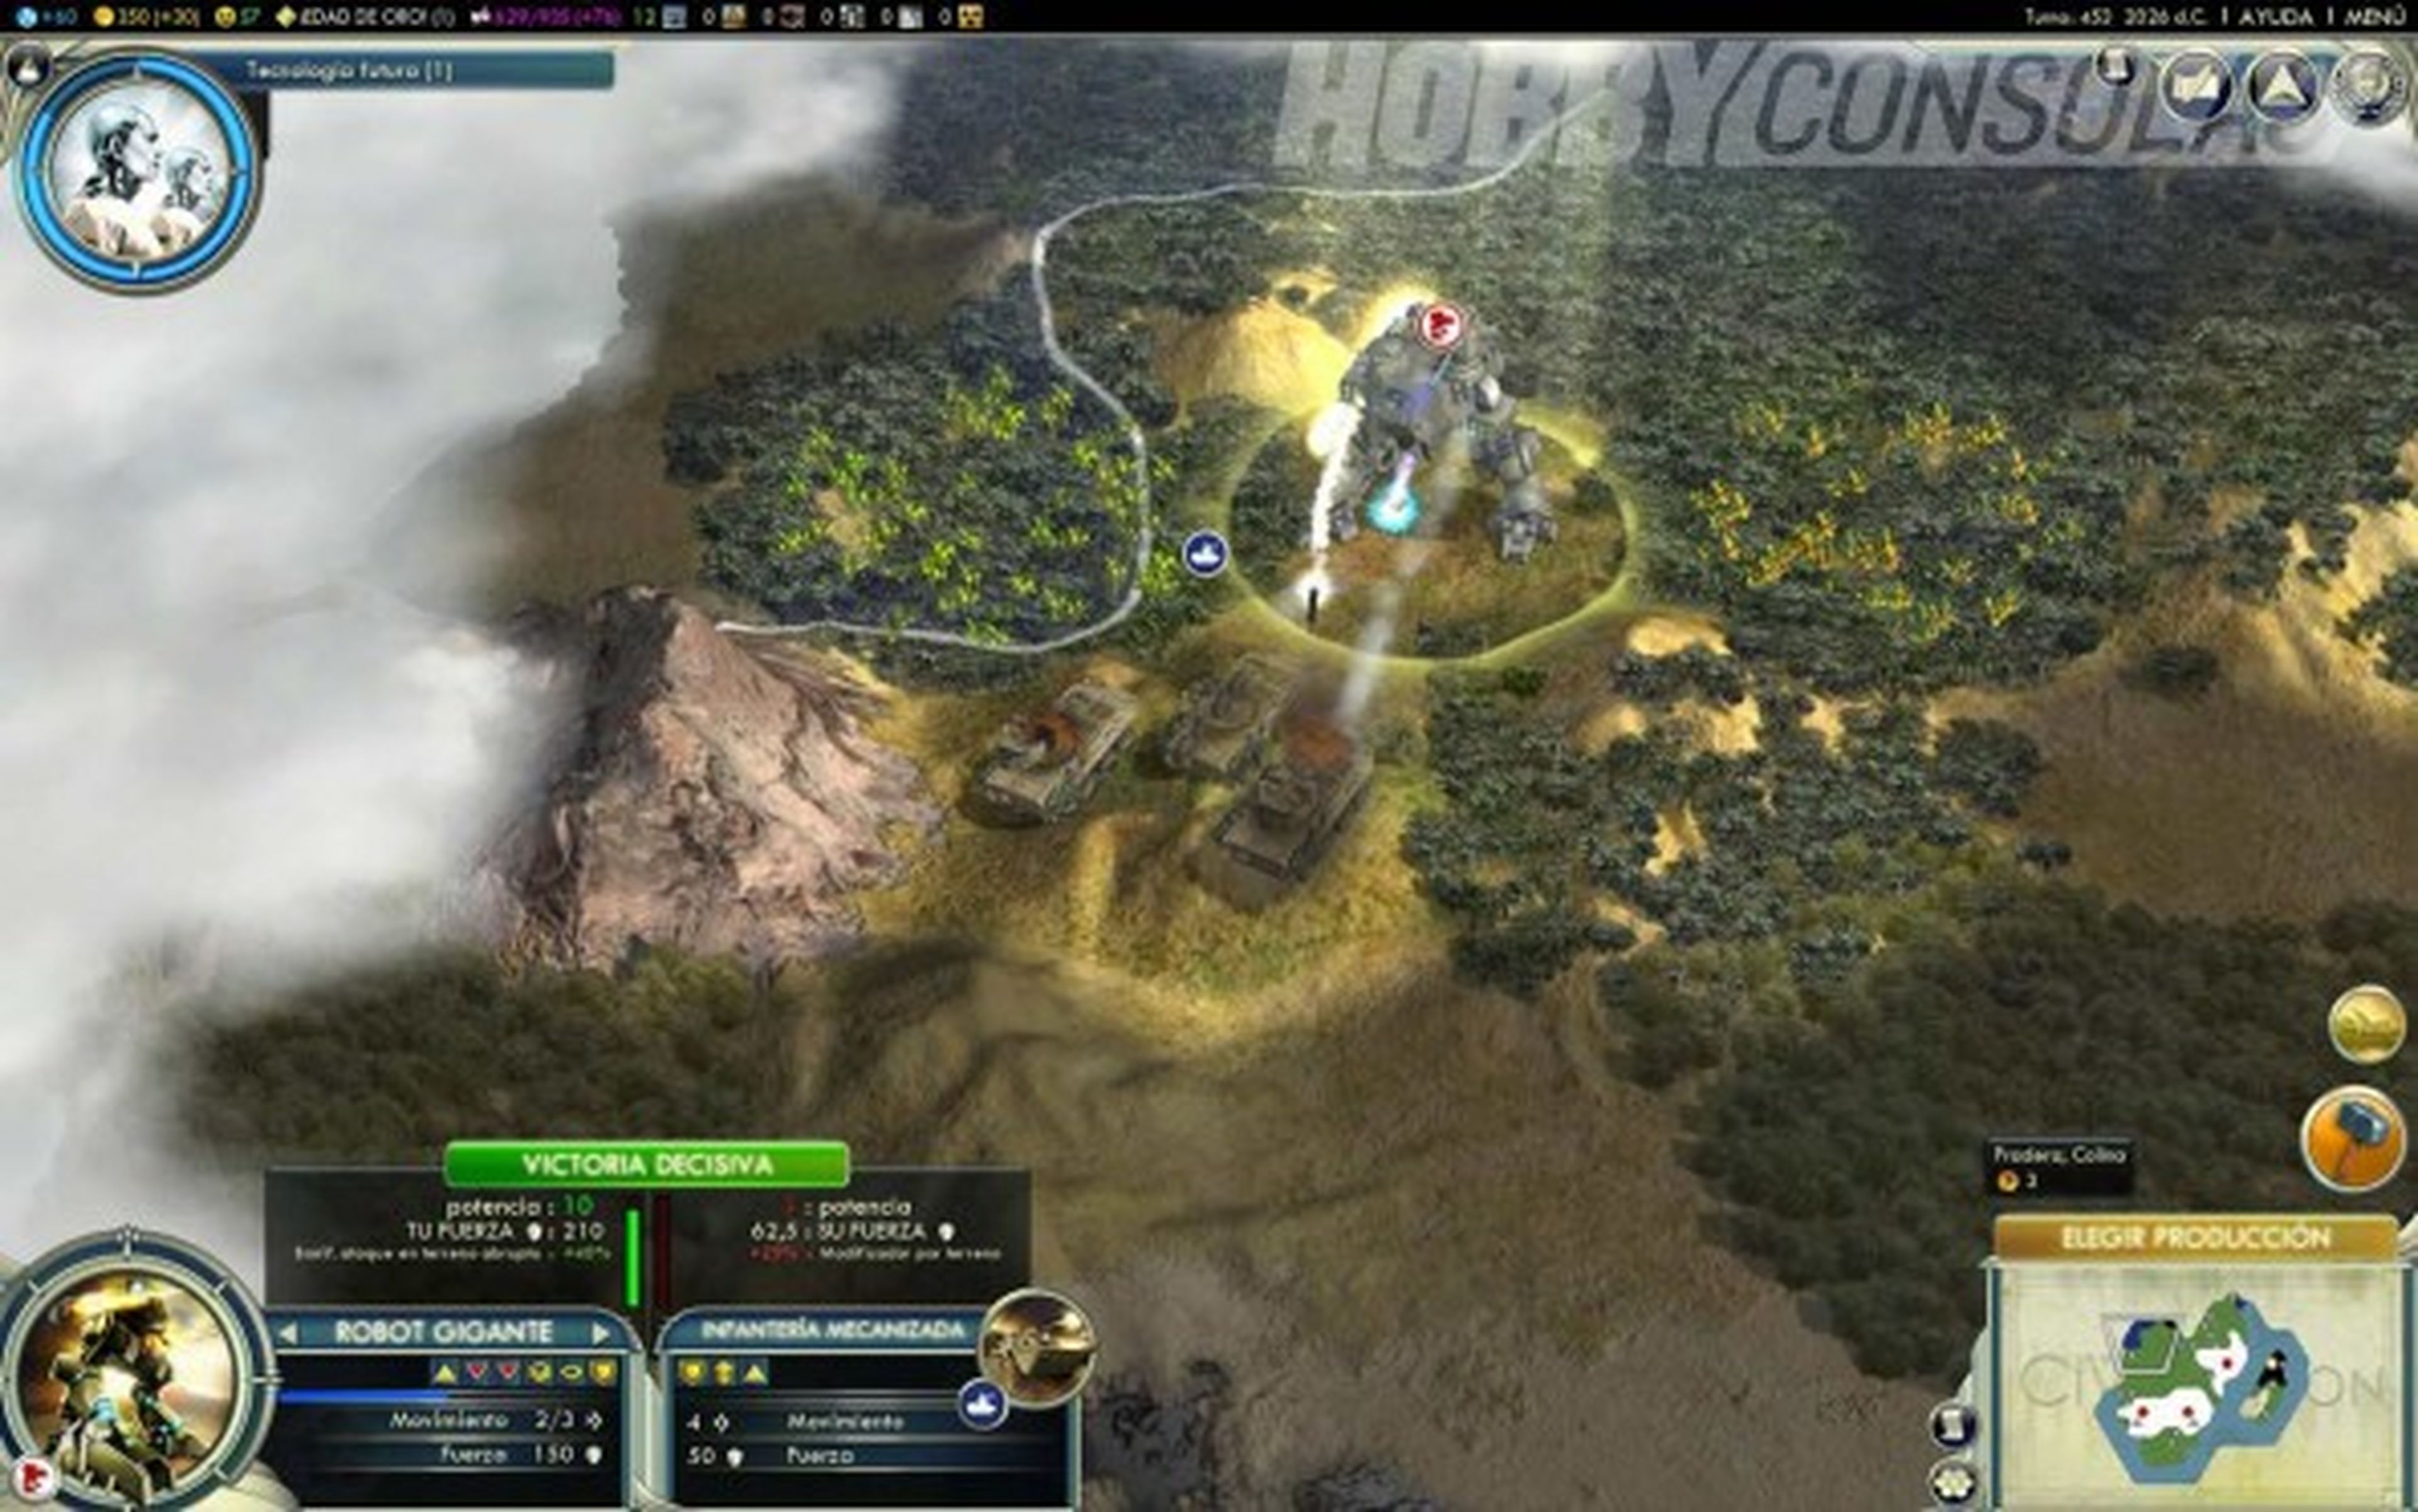 Juega gratis a Civilization V en Steam desde hoy